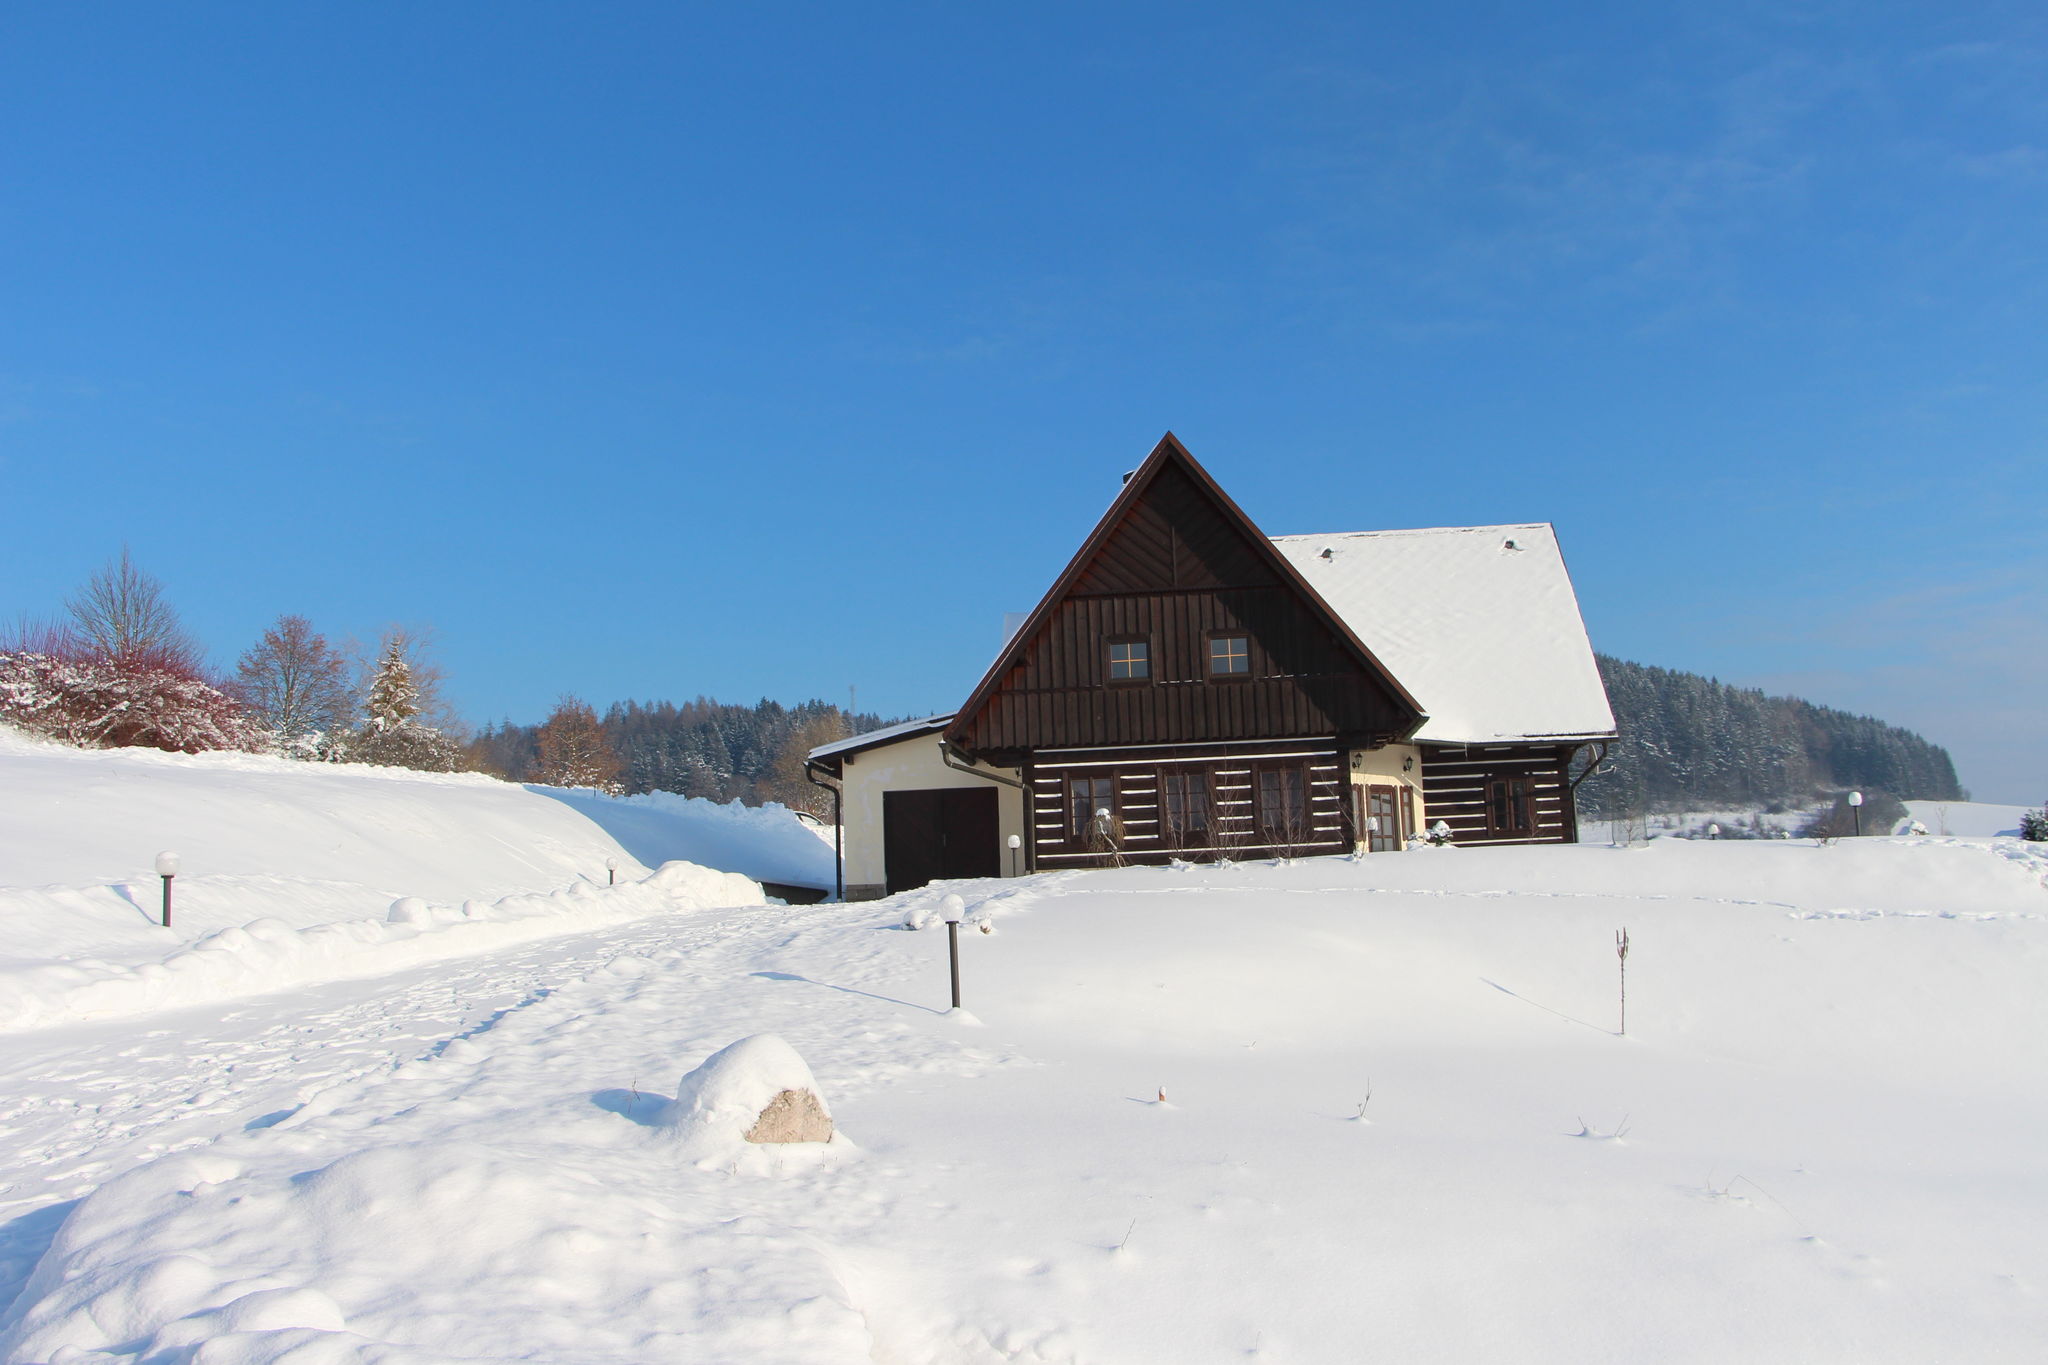 Chalet près du domaine de ski de Stupna, République Tchèque